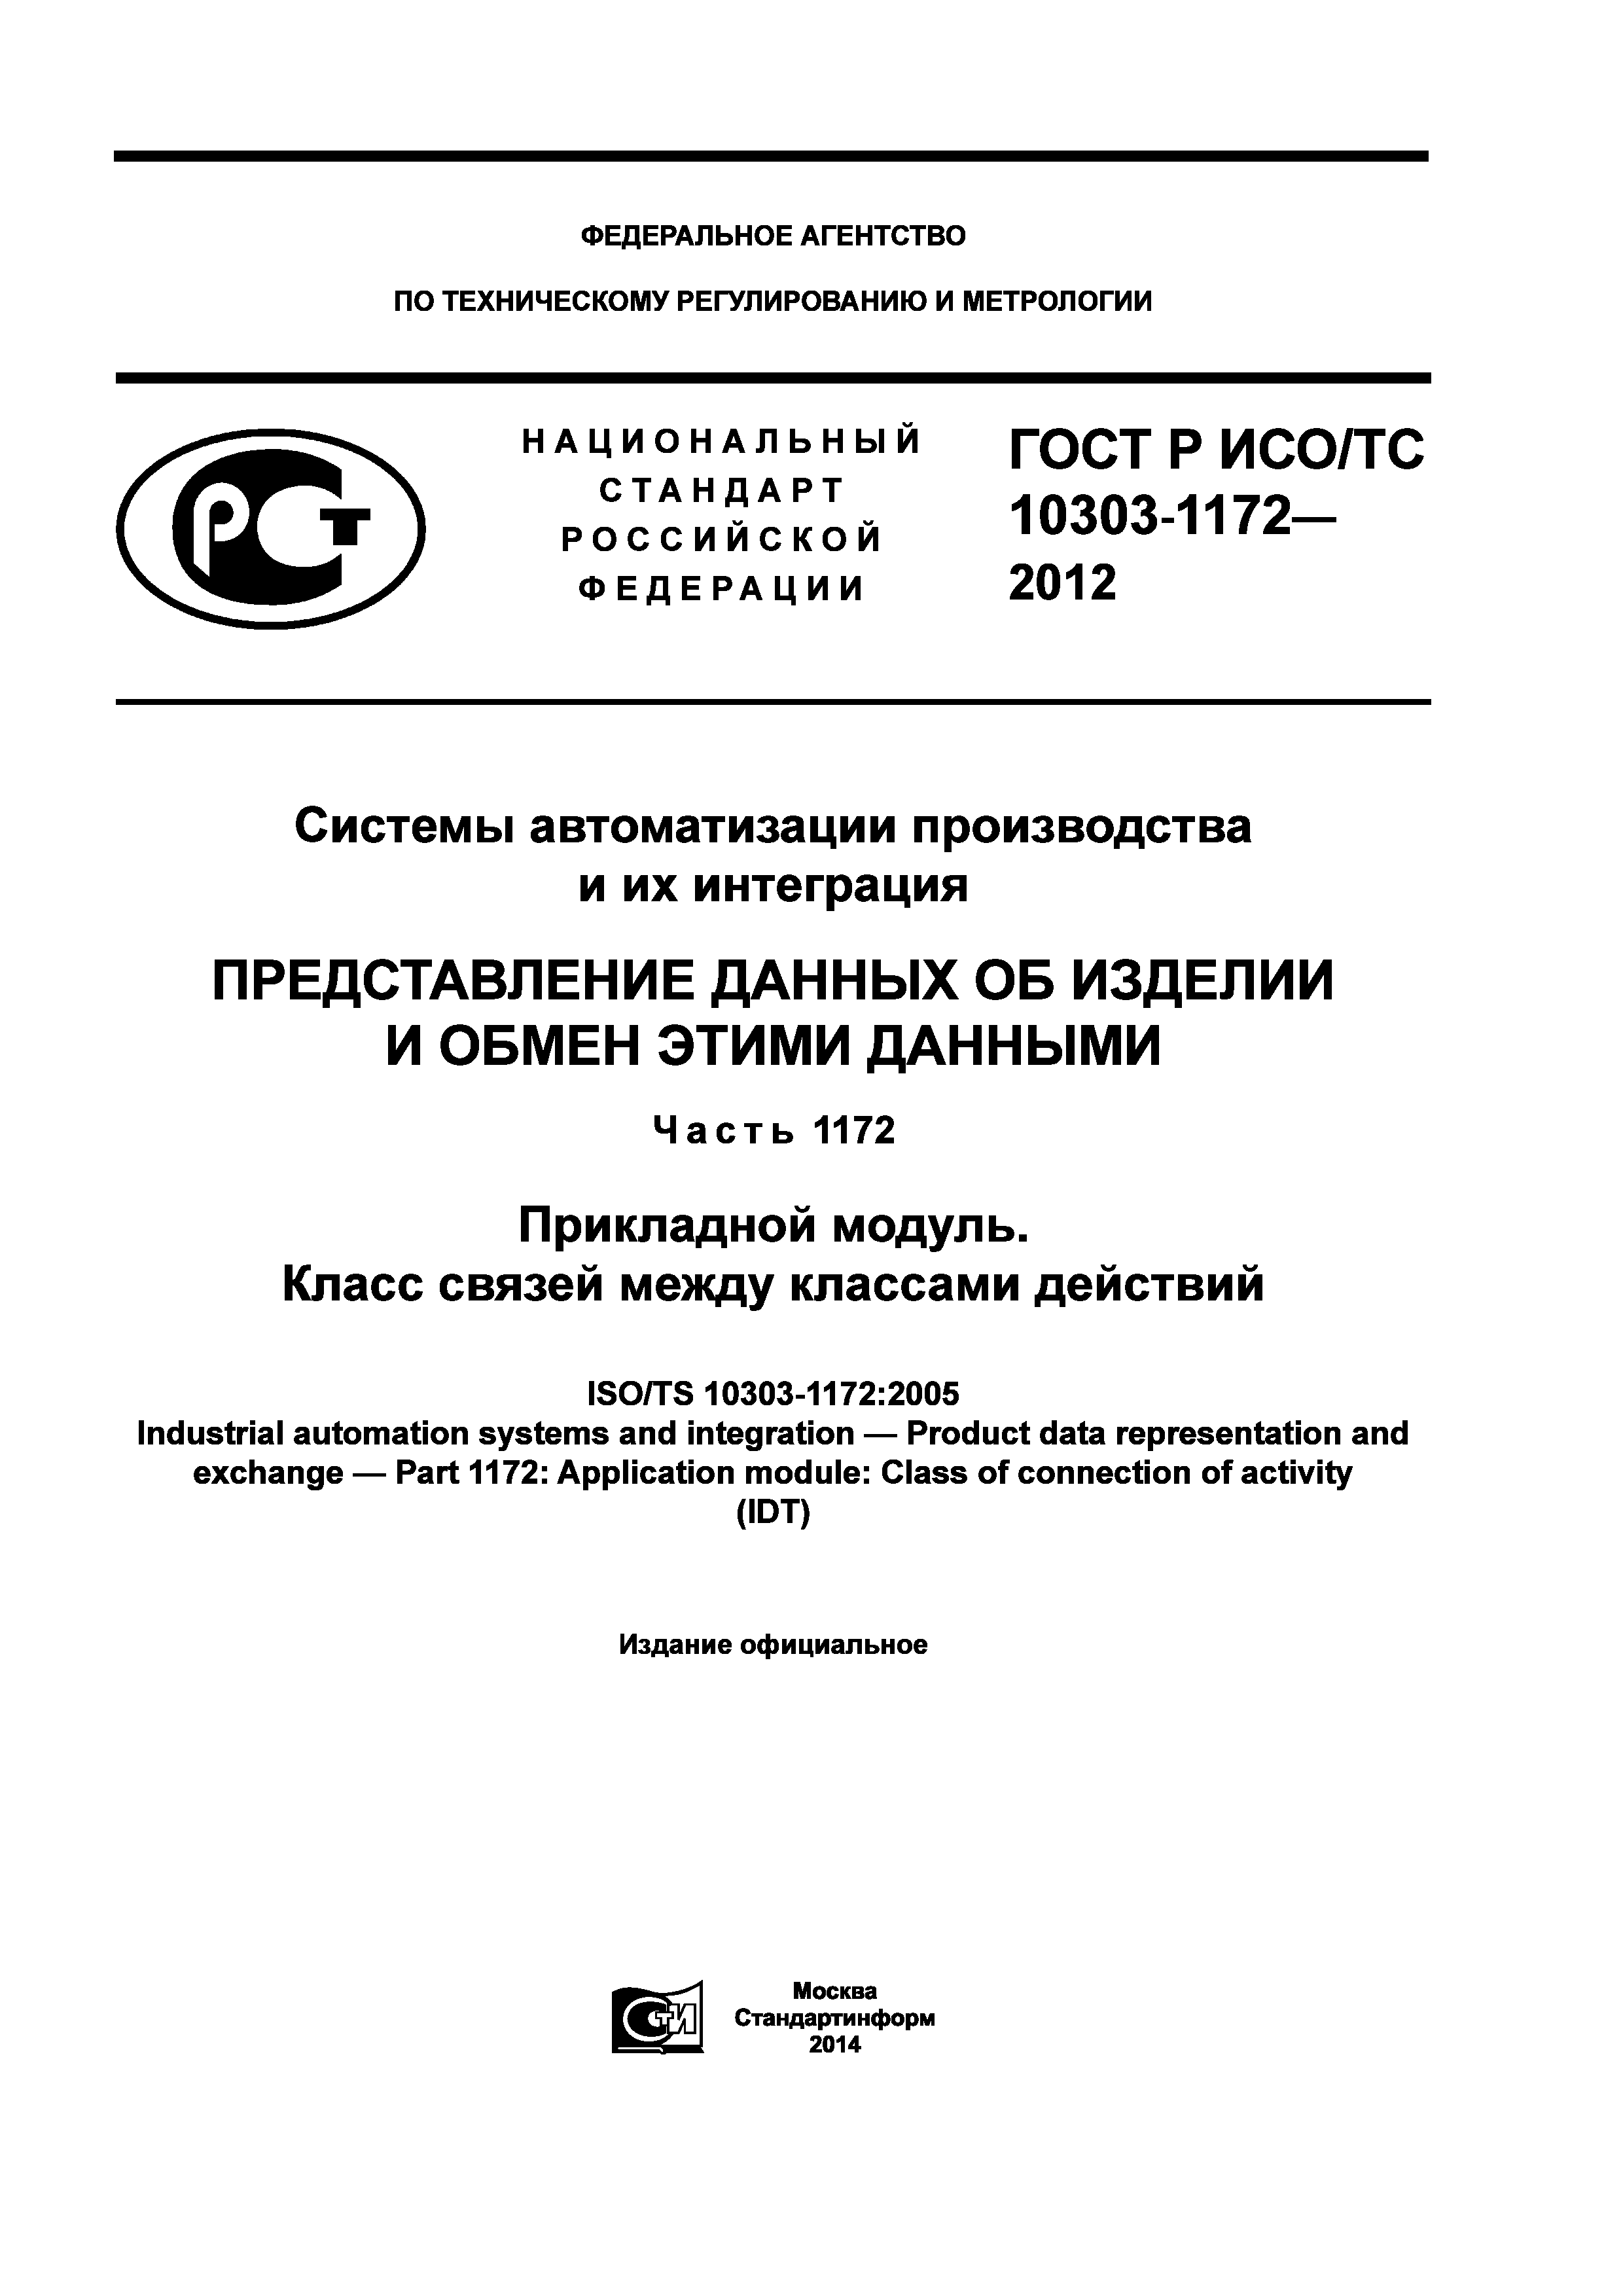 ГОСТ Р ИСО/ТС 10303-1172-2012